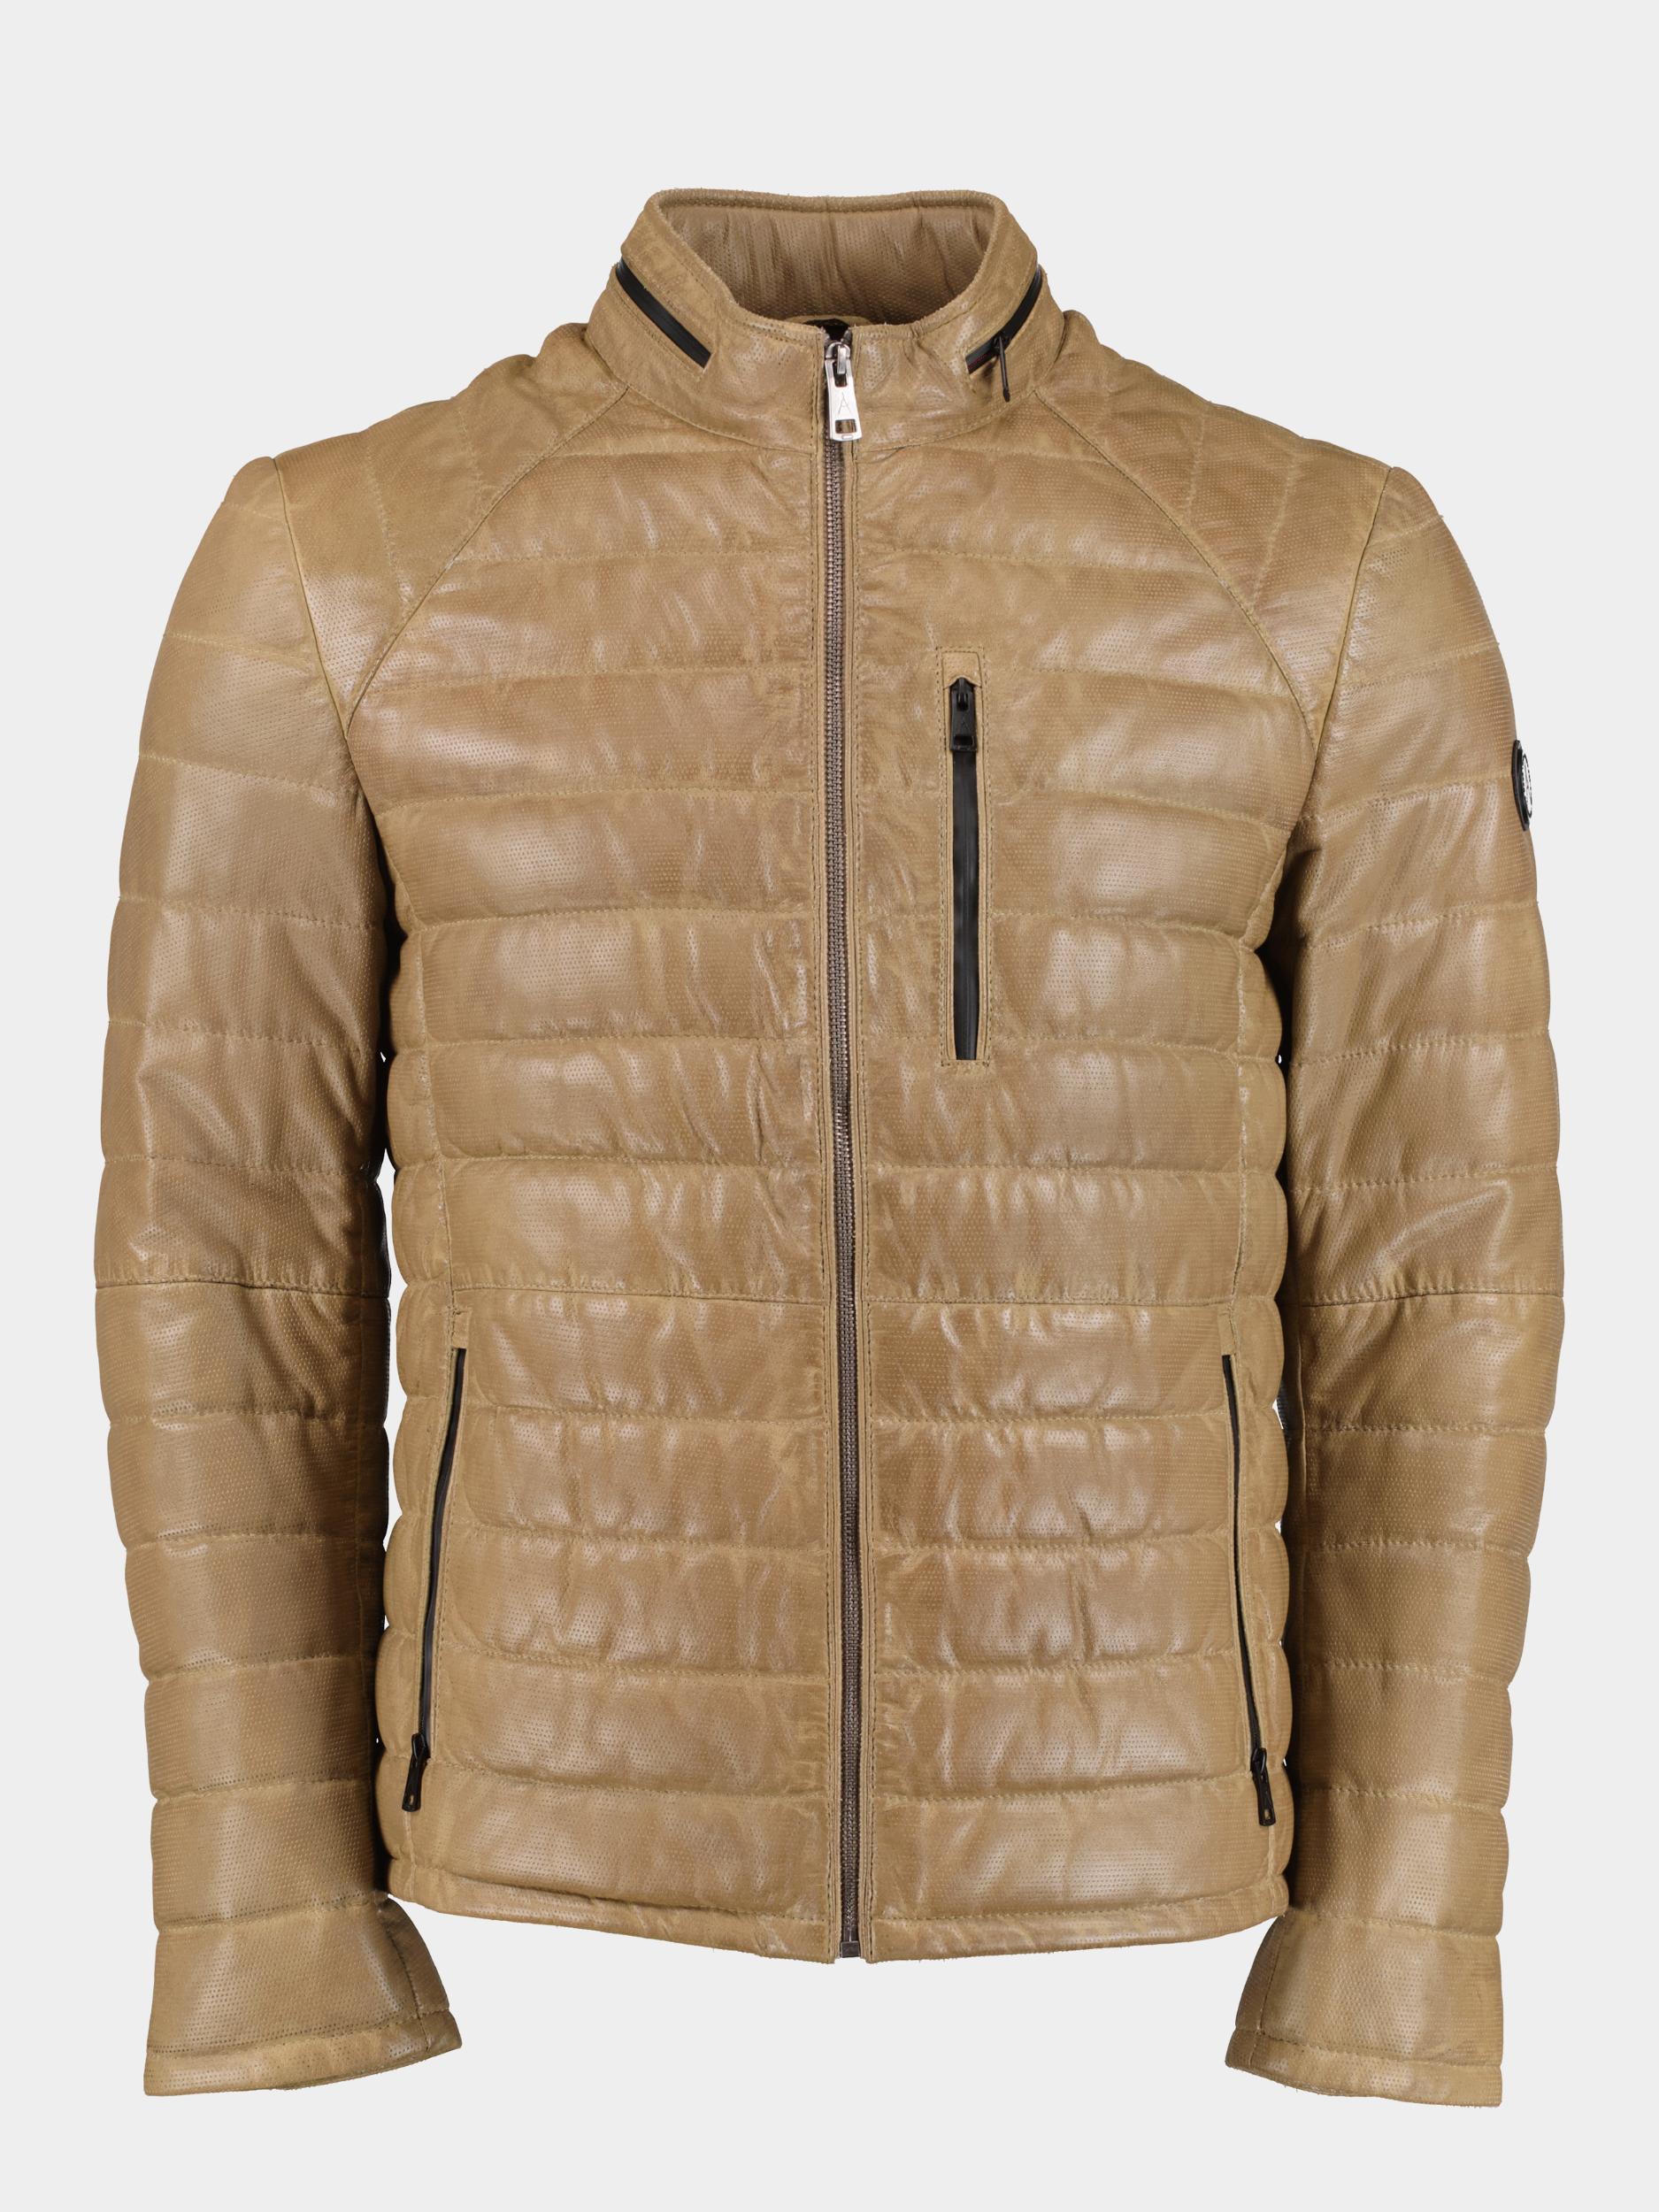 Afbeelding van Donders 1860 Lederen jack leather jacket 52290/623